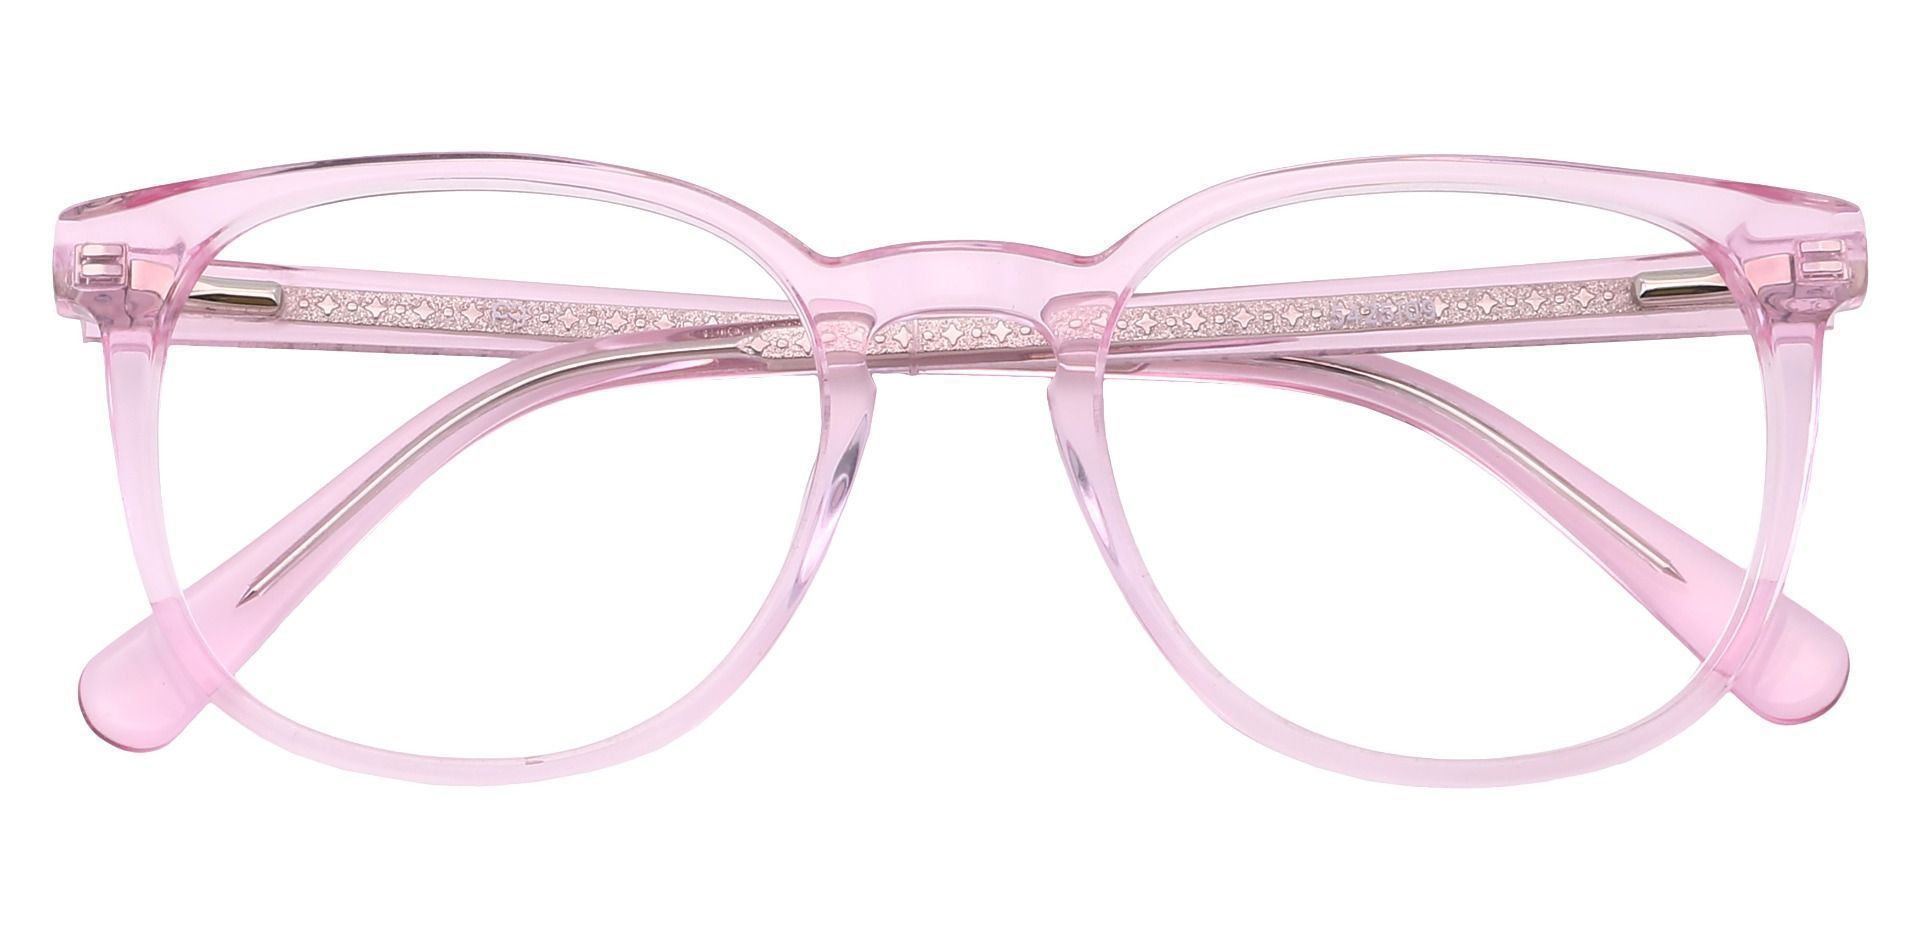 Nebula Round Eyeglasses Frame - Pink